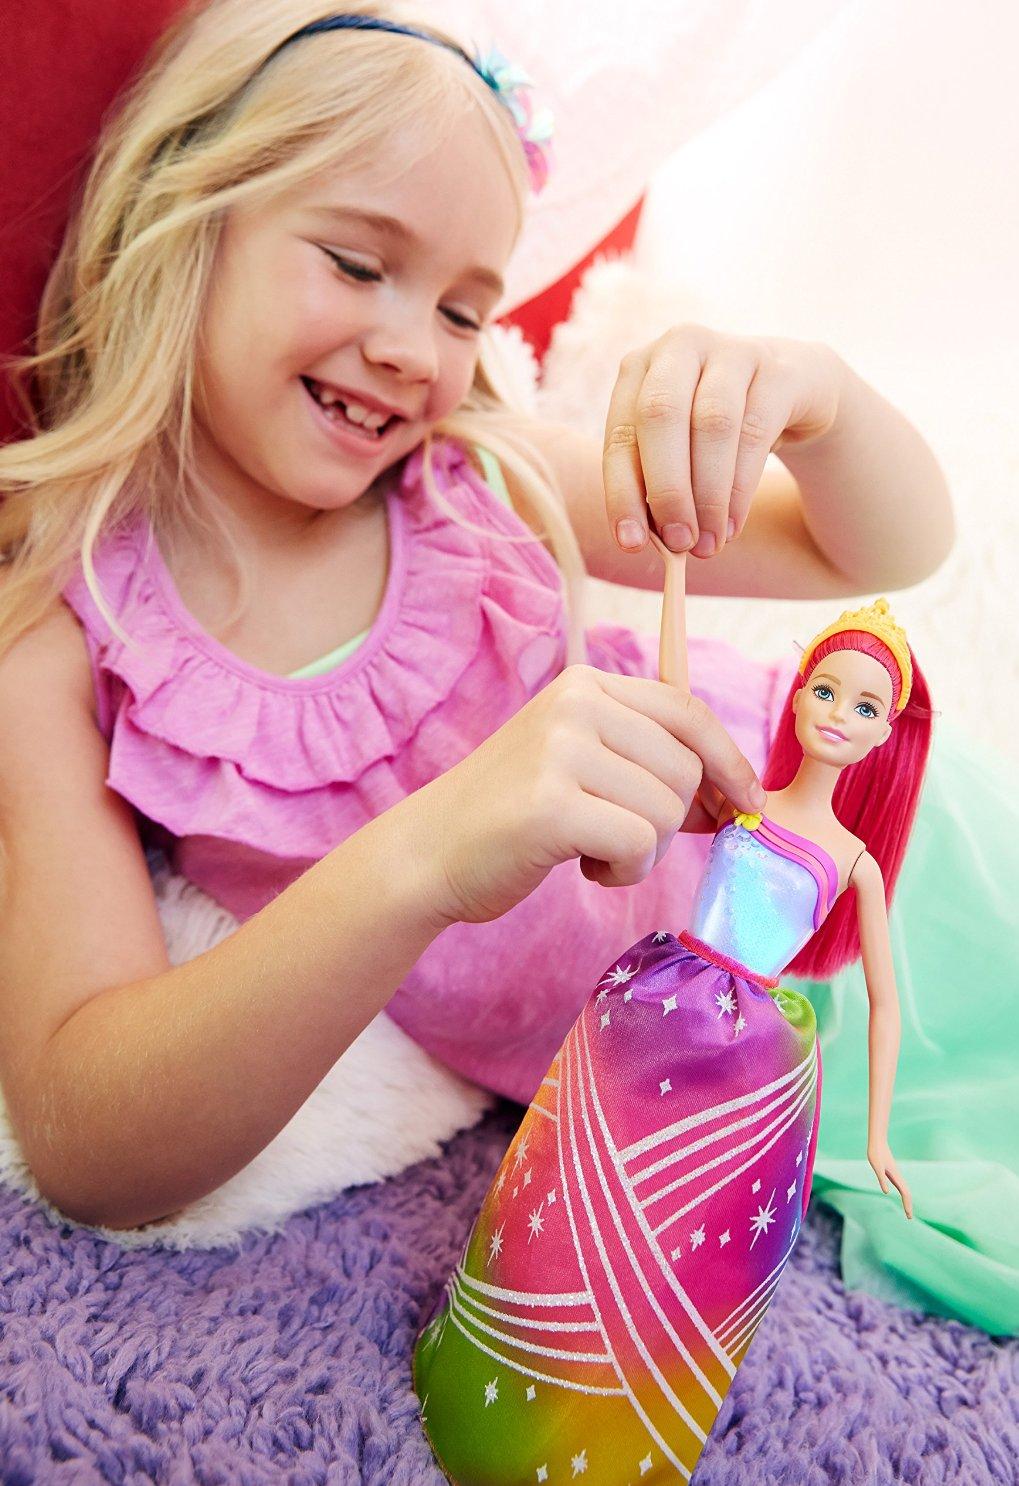 Lalka Barbie Tęczowa Księżniczka Dreamtopia, Mattel DPP90 